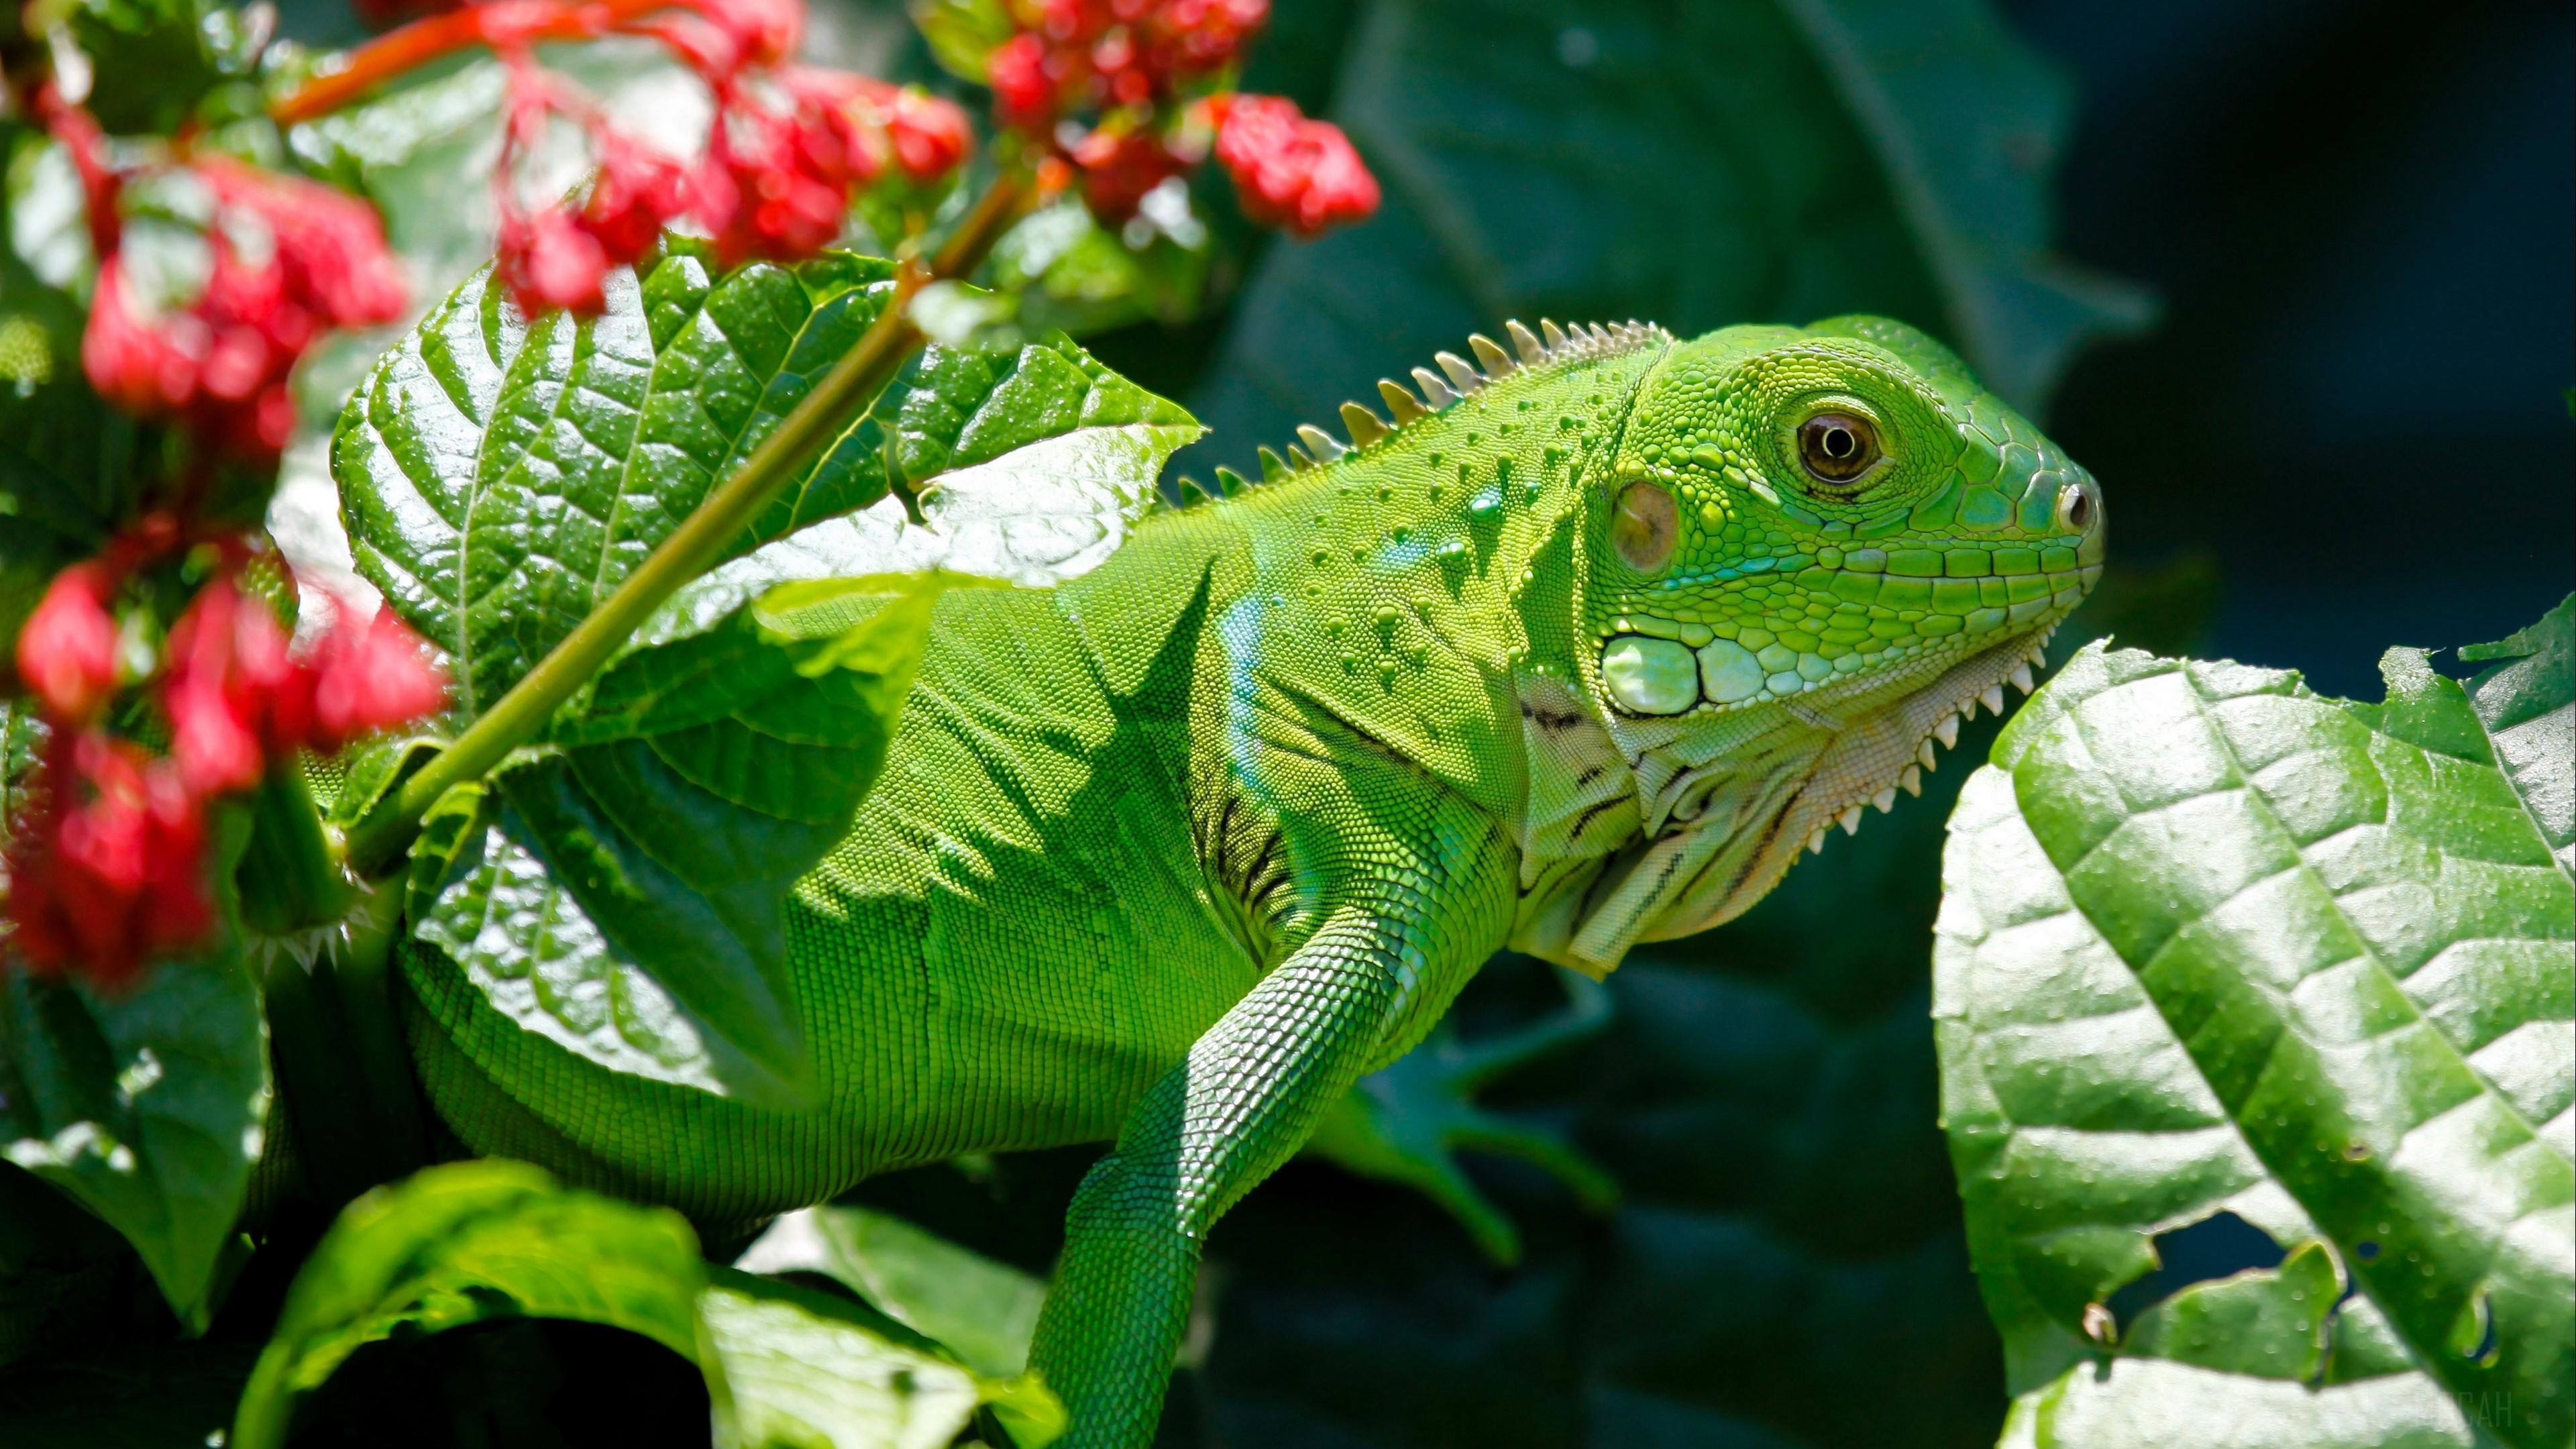 HD wallpaper, Iguana, Reptile, Flower, Leaf 4K, Lizard